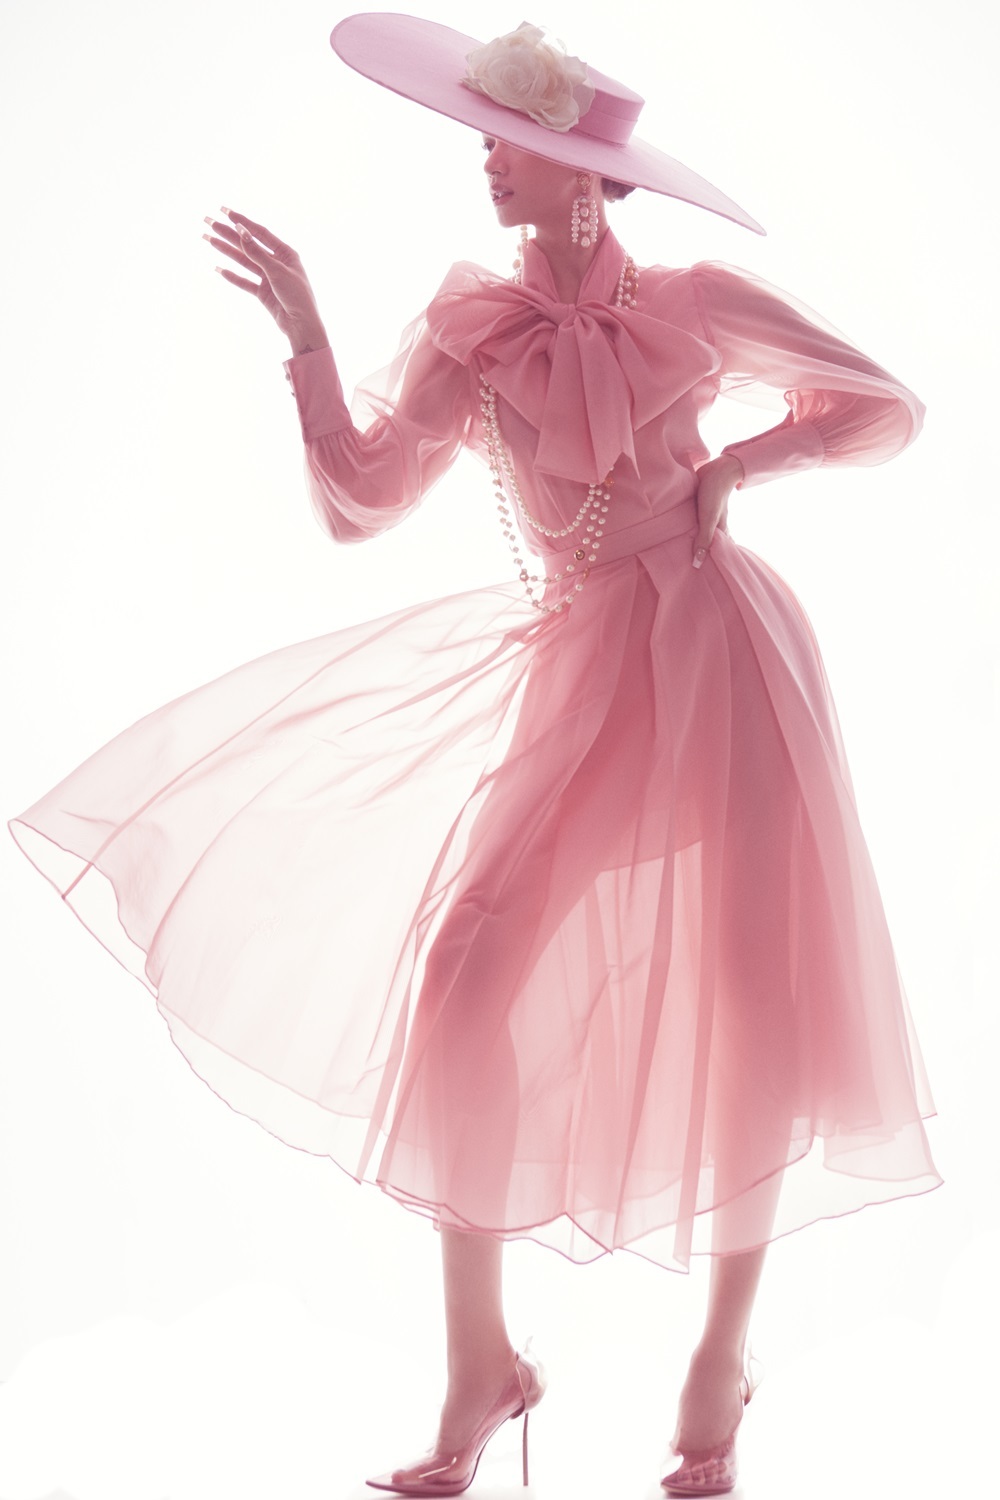 Chiếc đầm hồng với chất liệu voan xuyên thấu quyến rũ khoe triệt để vóc dáng thanh mảnh, cuốn hút của hoa hậu sinh năm 1991. Dù trang phục có nhiều layer, điển hình chiếc nơ voan trước cổ, nhưng vẫn tạo cảm giác duyên dáng, thanh lịch